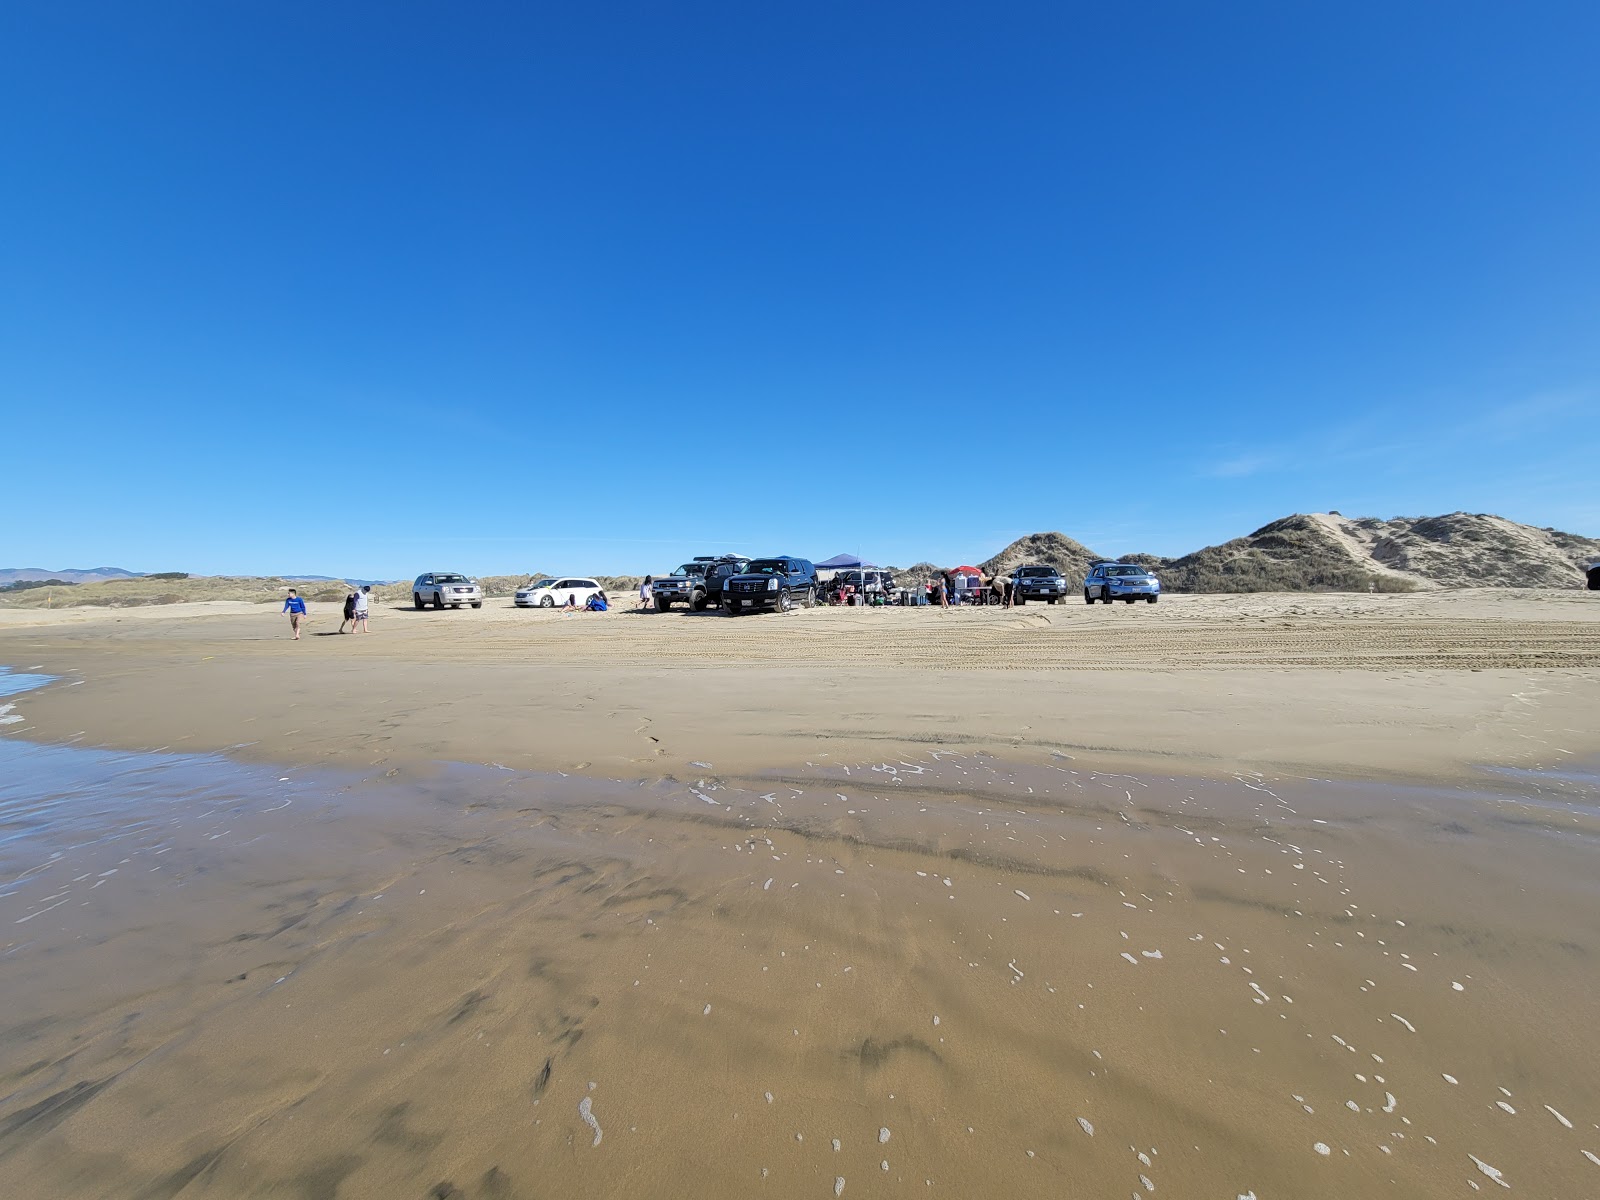 Oceano Dunes Recreation'in fotoğrafı plaj tatil beldesi alanı